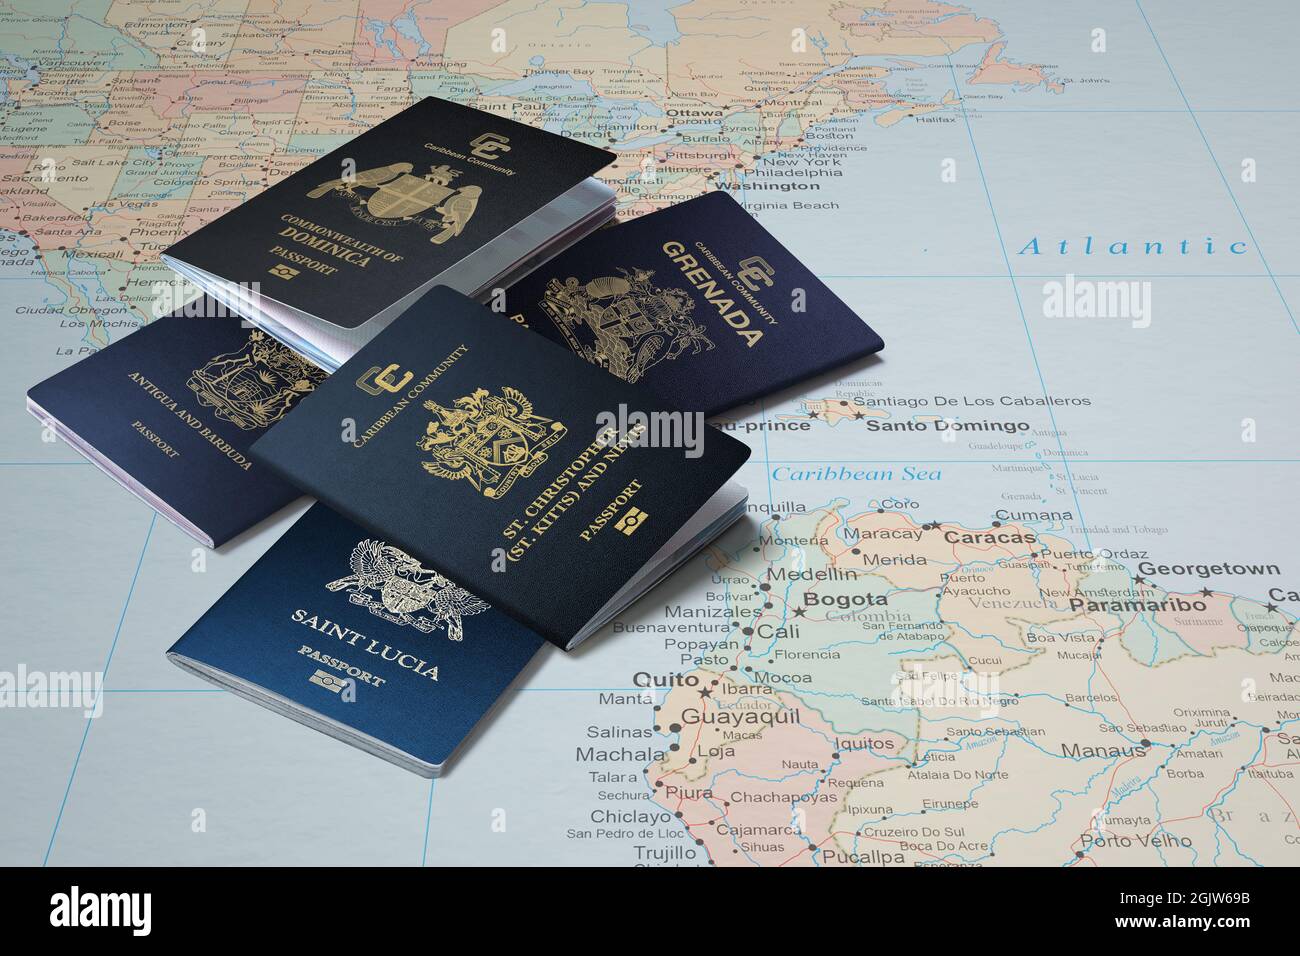 Il passaporto dei paesi caraibici sulla mappa del mondo, passaporti caraibici, Dominica, Saint Kitts e Nevis, Grenada, Santa Lucia, Antigua e Barbuda Foto Stock